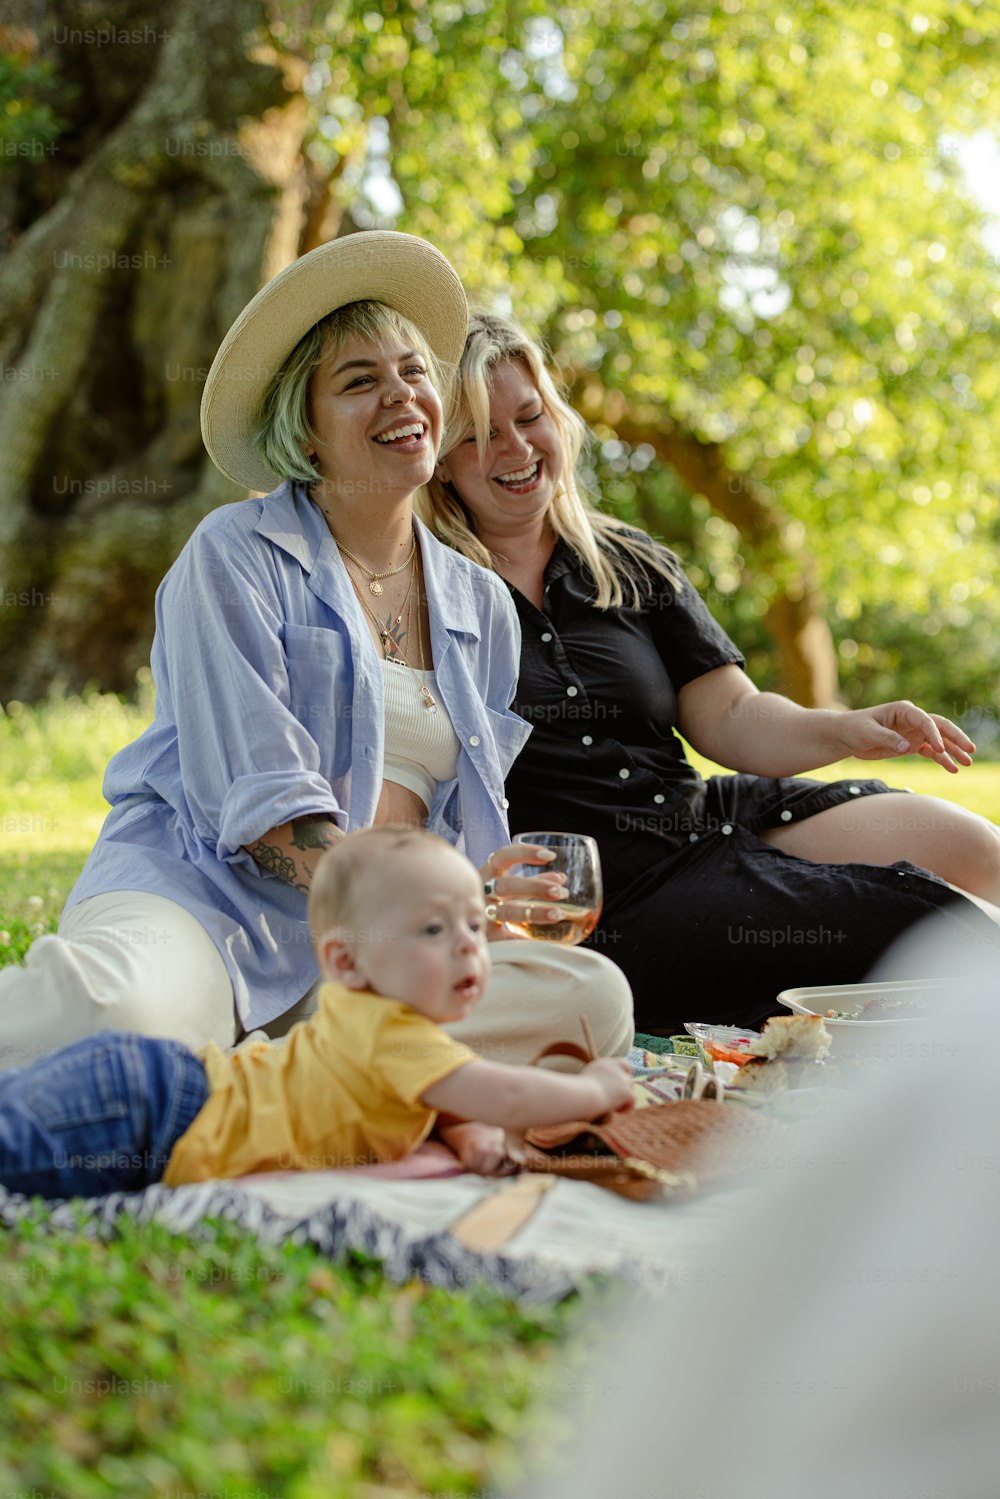 Dos mujeres y un bebé sentados sobre una manta en un parque